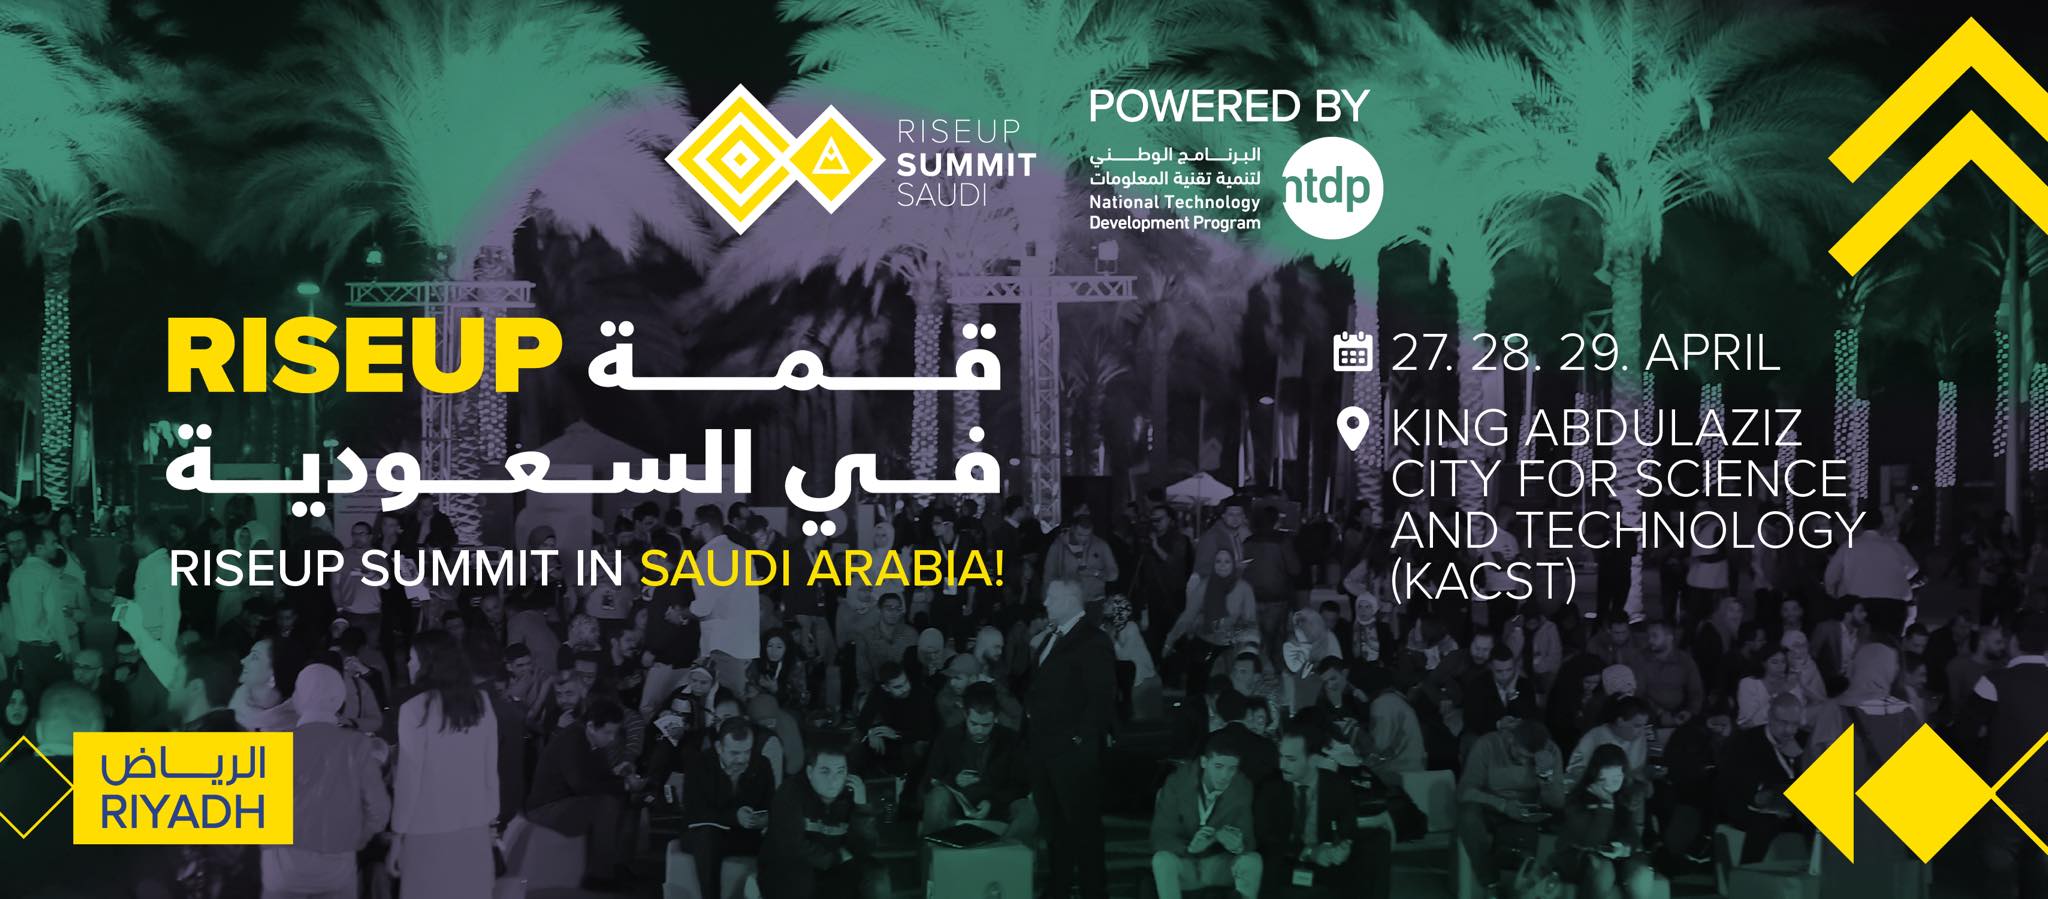 RiseUp Summit in Saudi Arabia